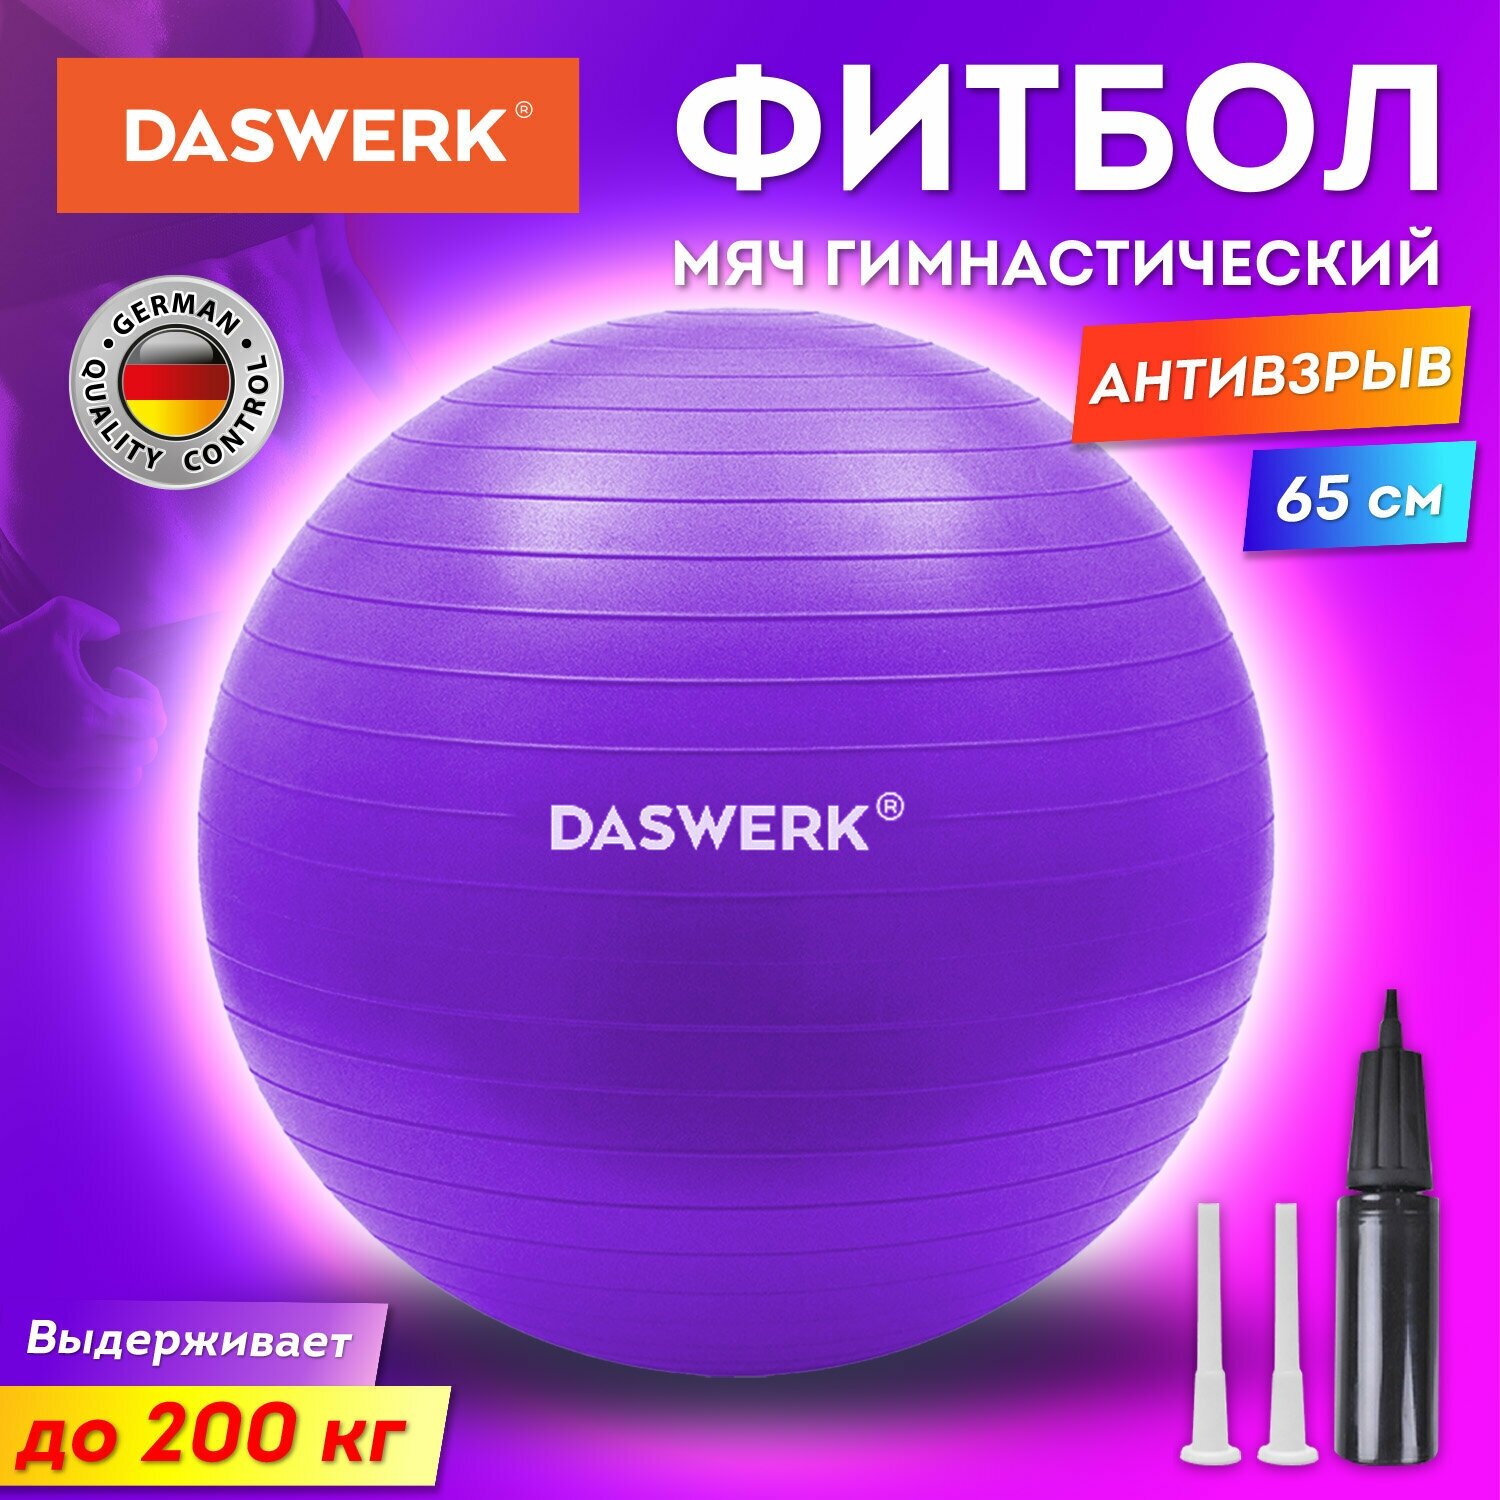 Фитбол, гимнастический мяч для фитнеса йоги пилатеса, надувной мяч с насосом, детский для новорожденных и взрослых 65 см антивзрыв, Daswerk, 680017